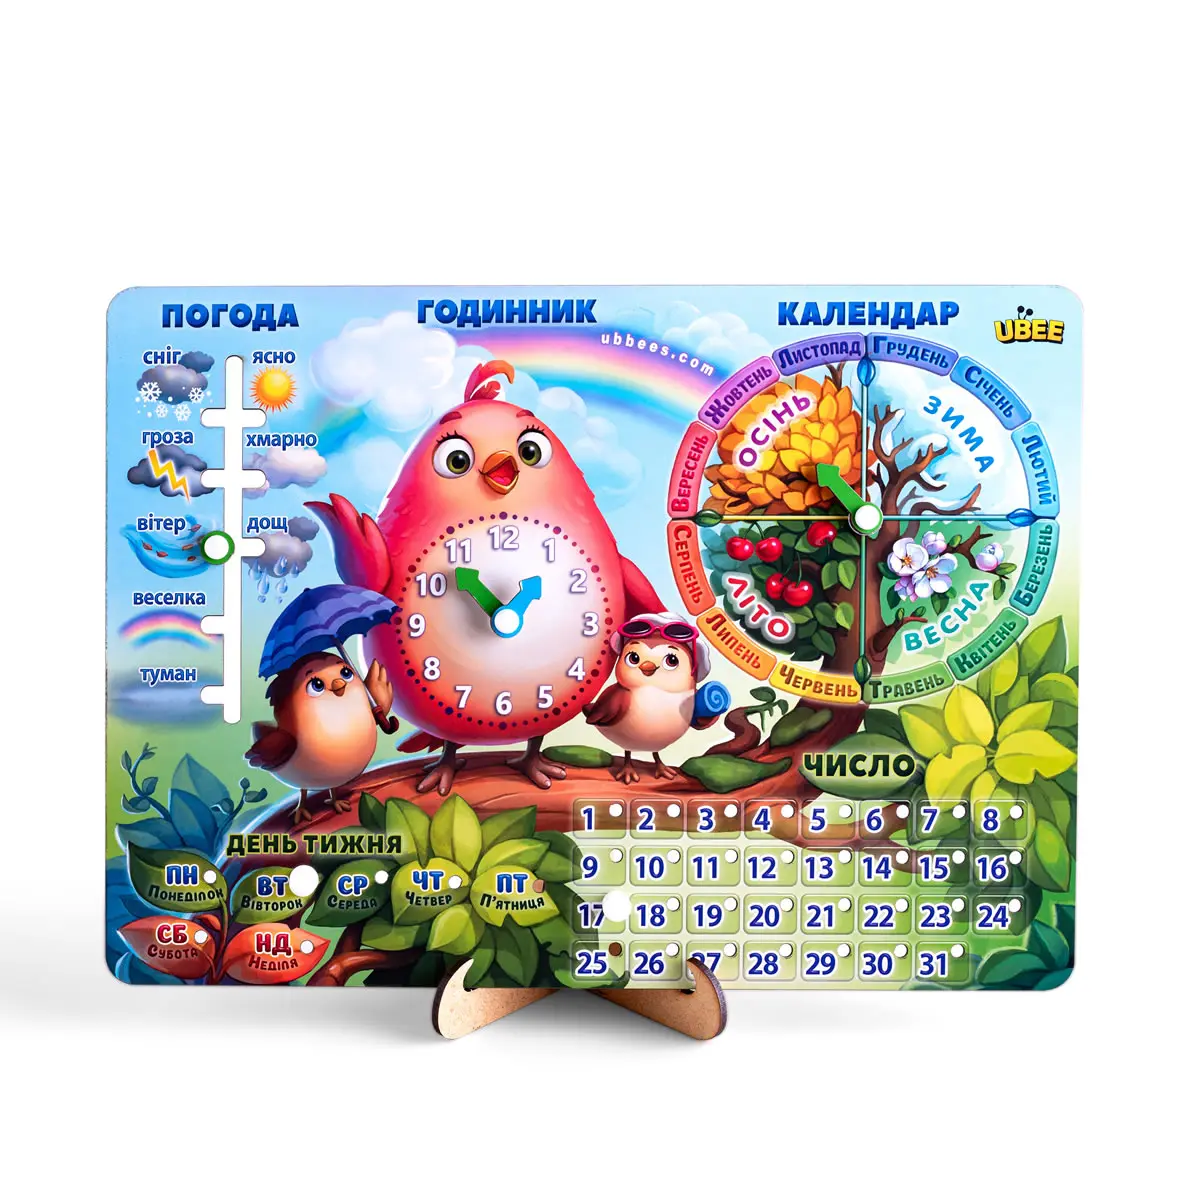 Детская деревянная развивающая игра "Календарь Птичка" на украинском языке